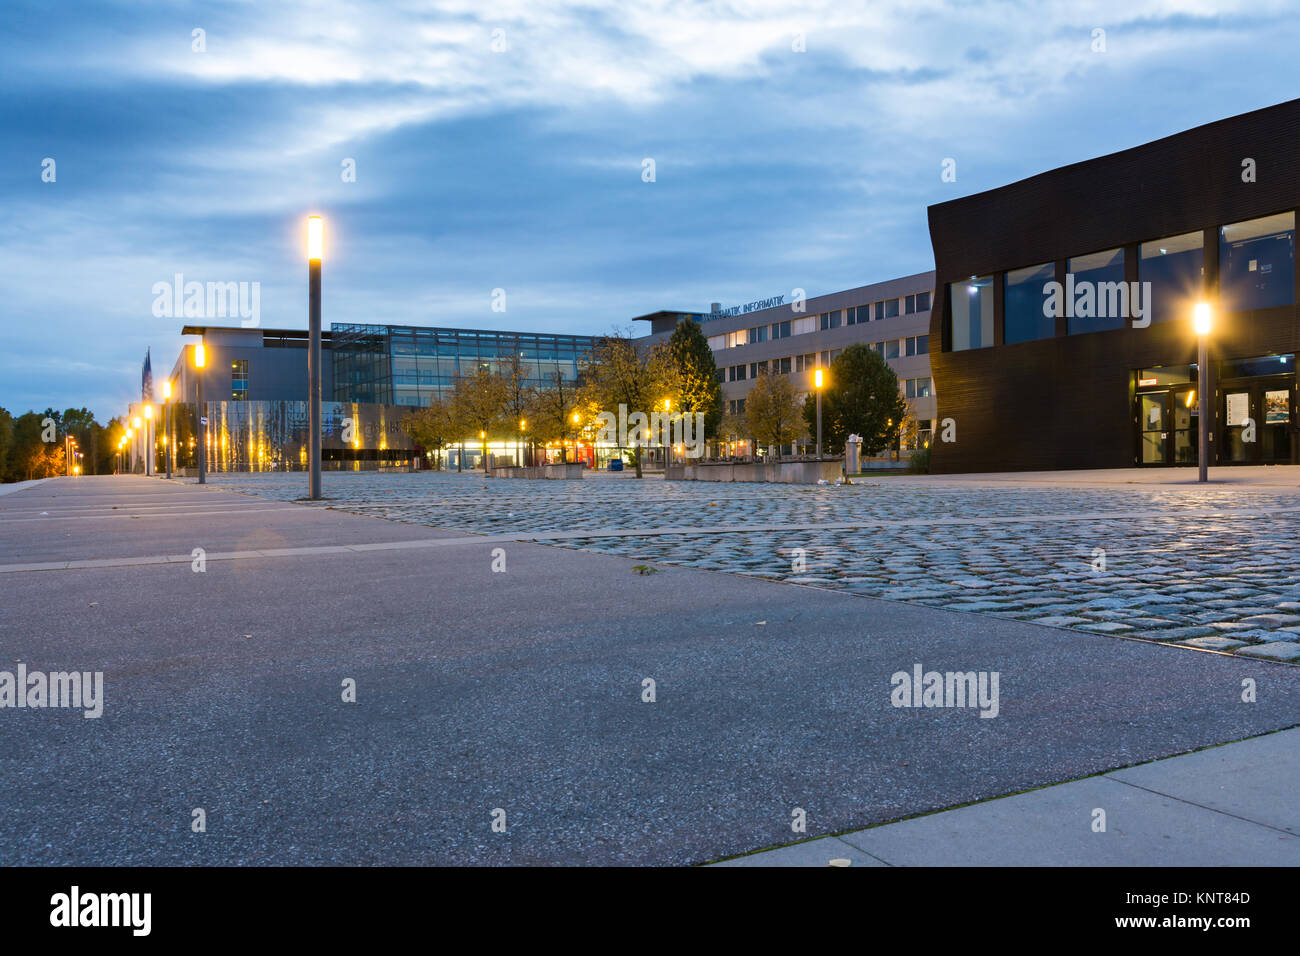 Patio delantero Arquitectura Exterior farolas técnico Universität Munich Alemania Europa cubo negro Math edificios de tecnología de la información oct. Foto de stock